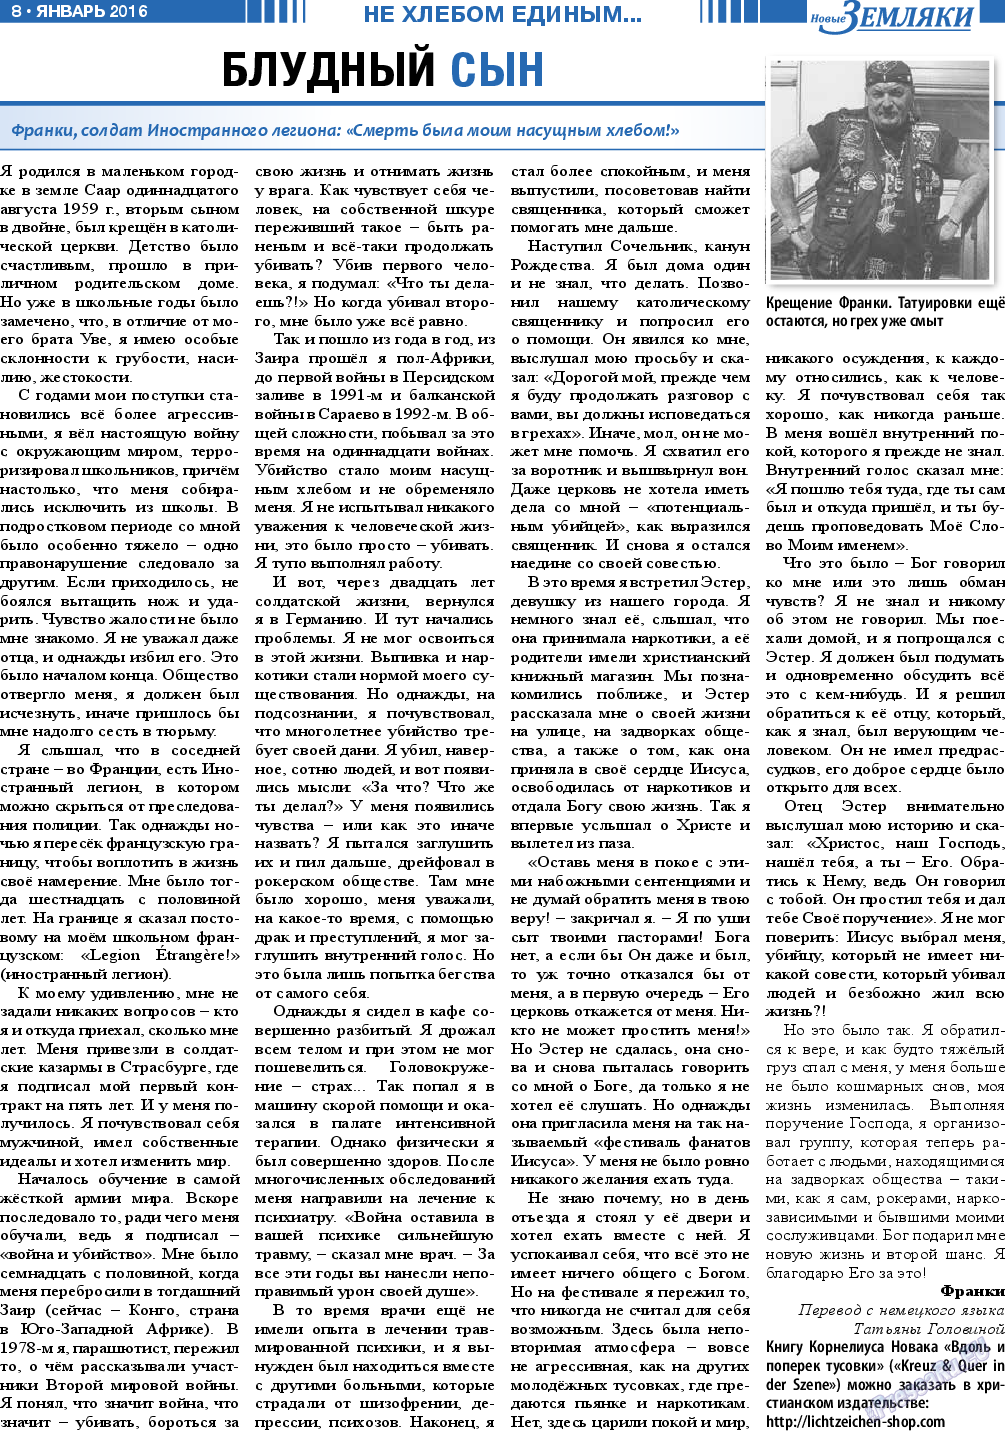 Новые Земляки, газета. 2016 №1 стр.8